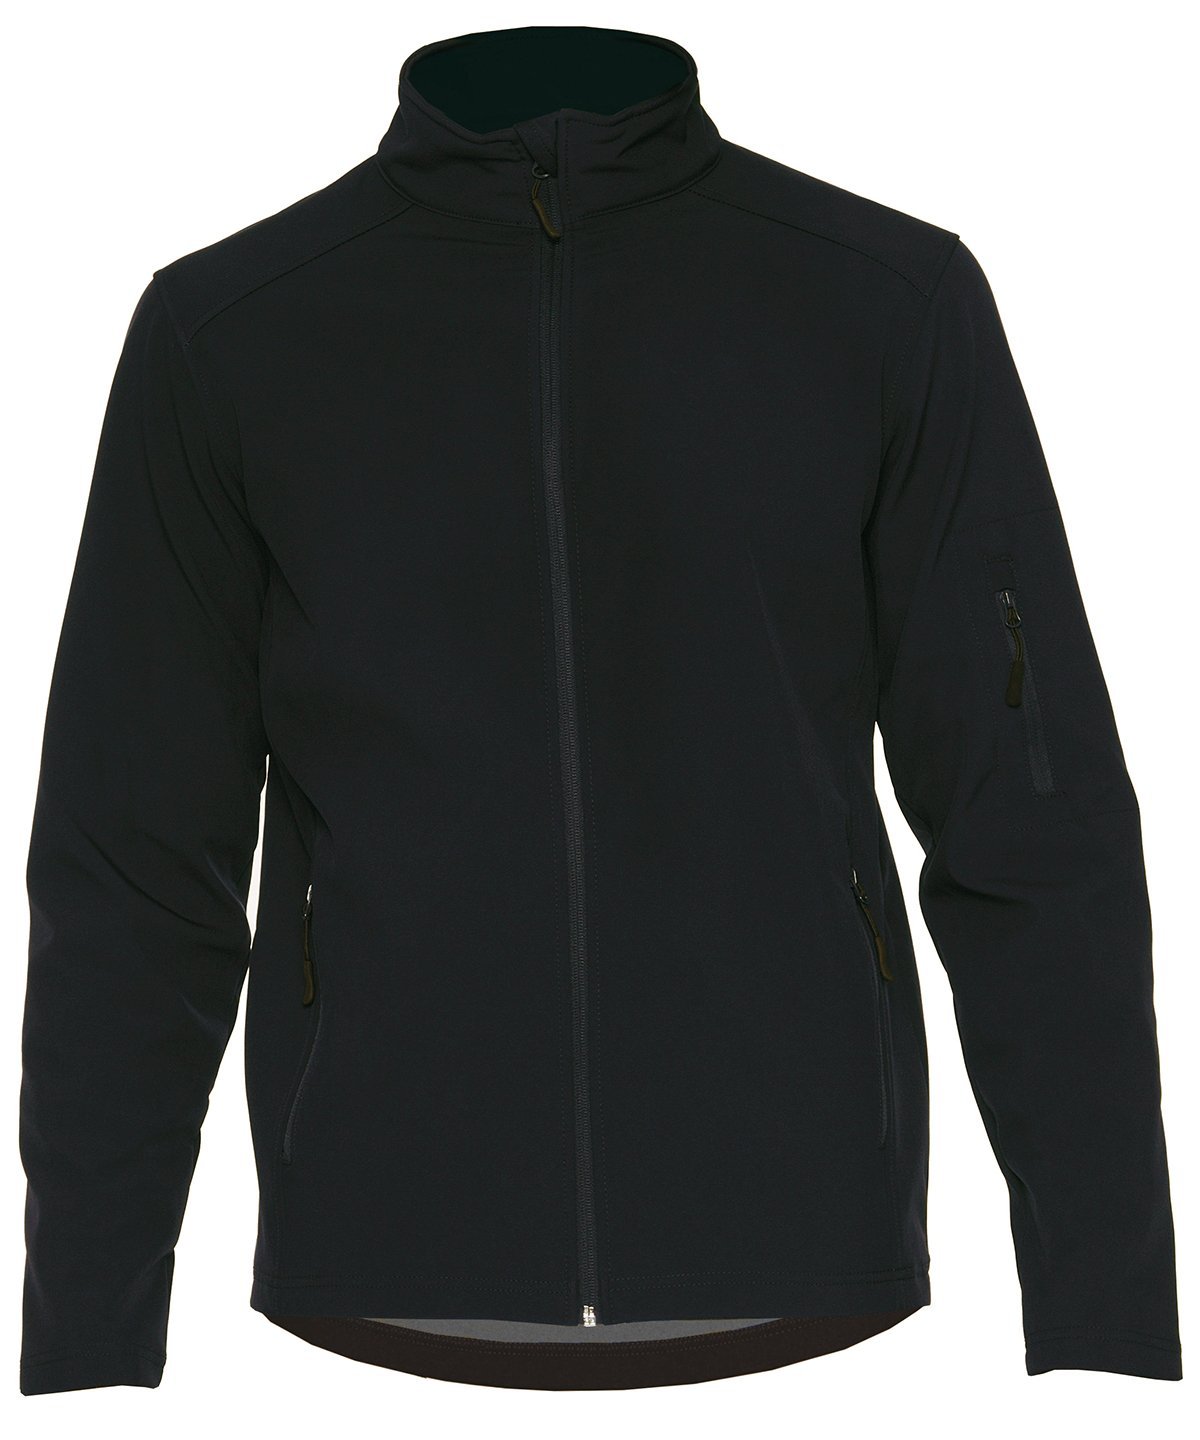 Hammer™ unisex softshell jacket | Huk Group Nuneaton